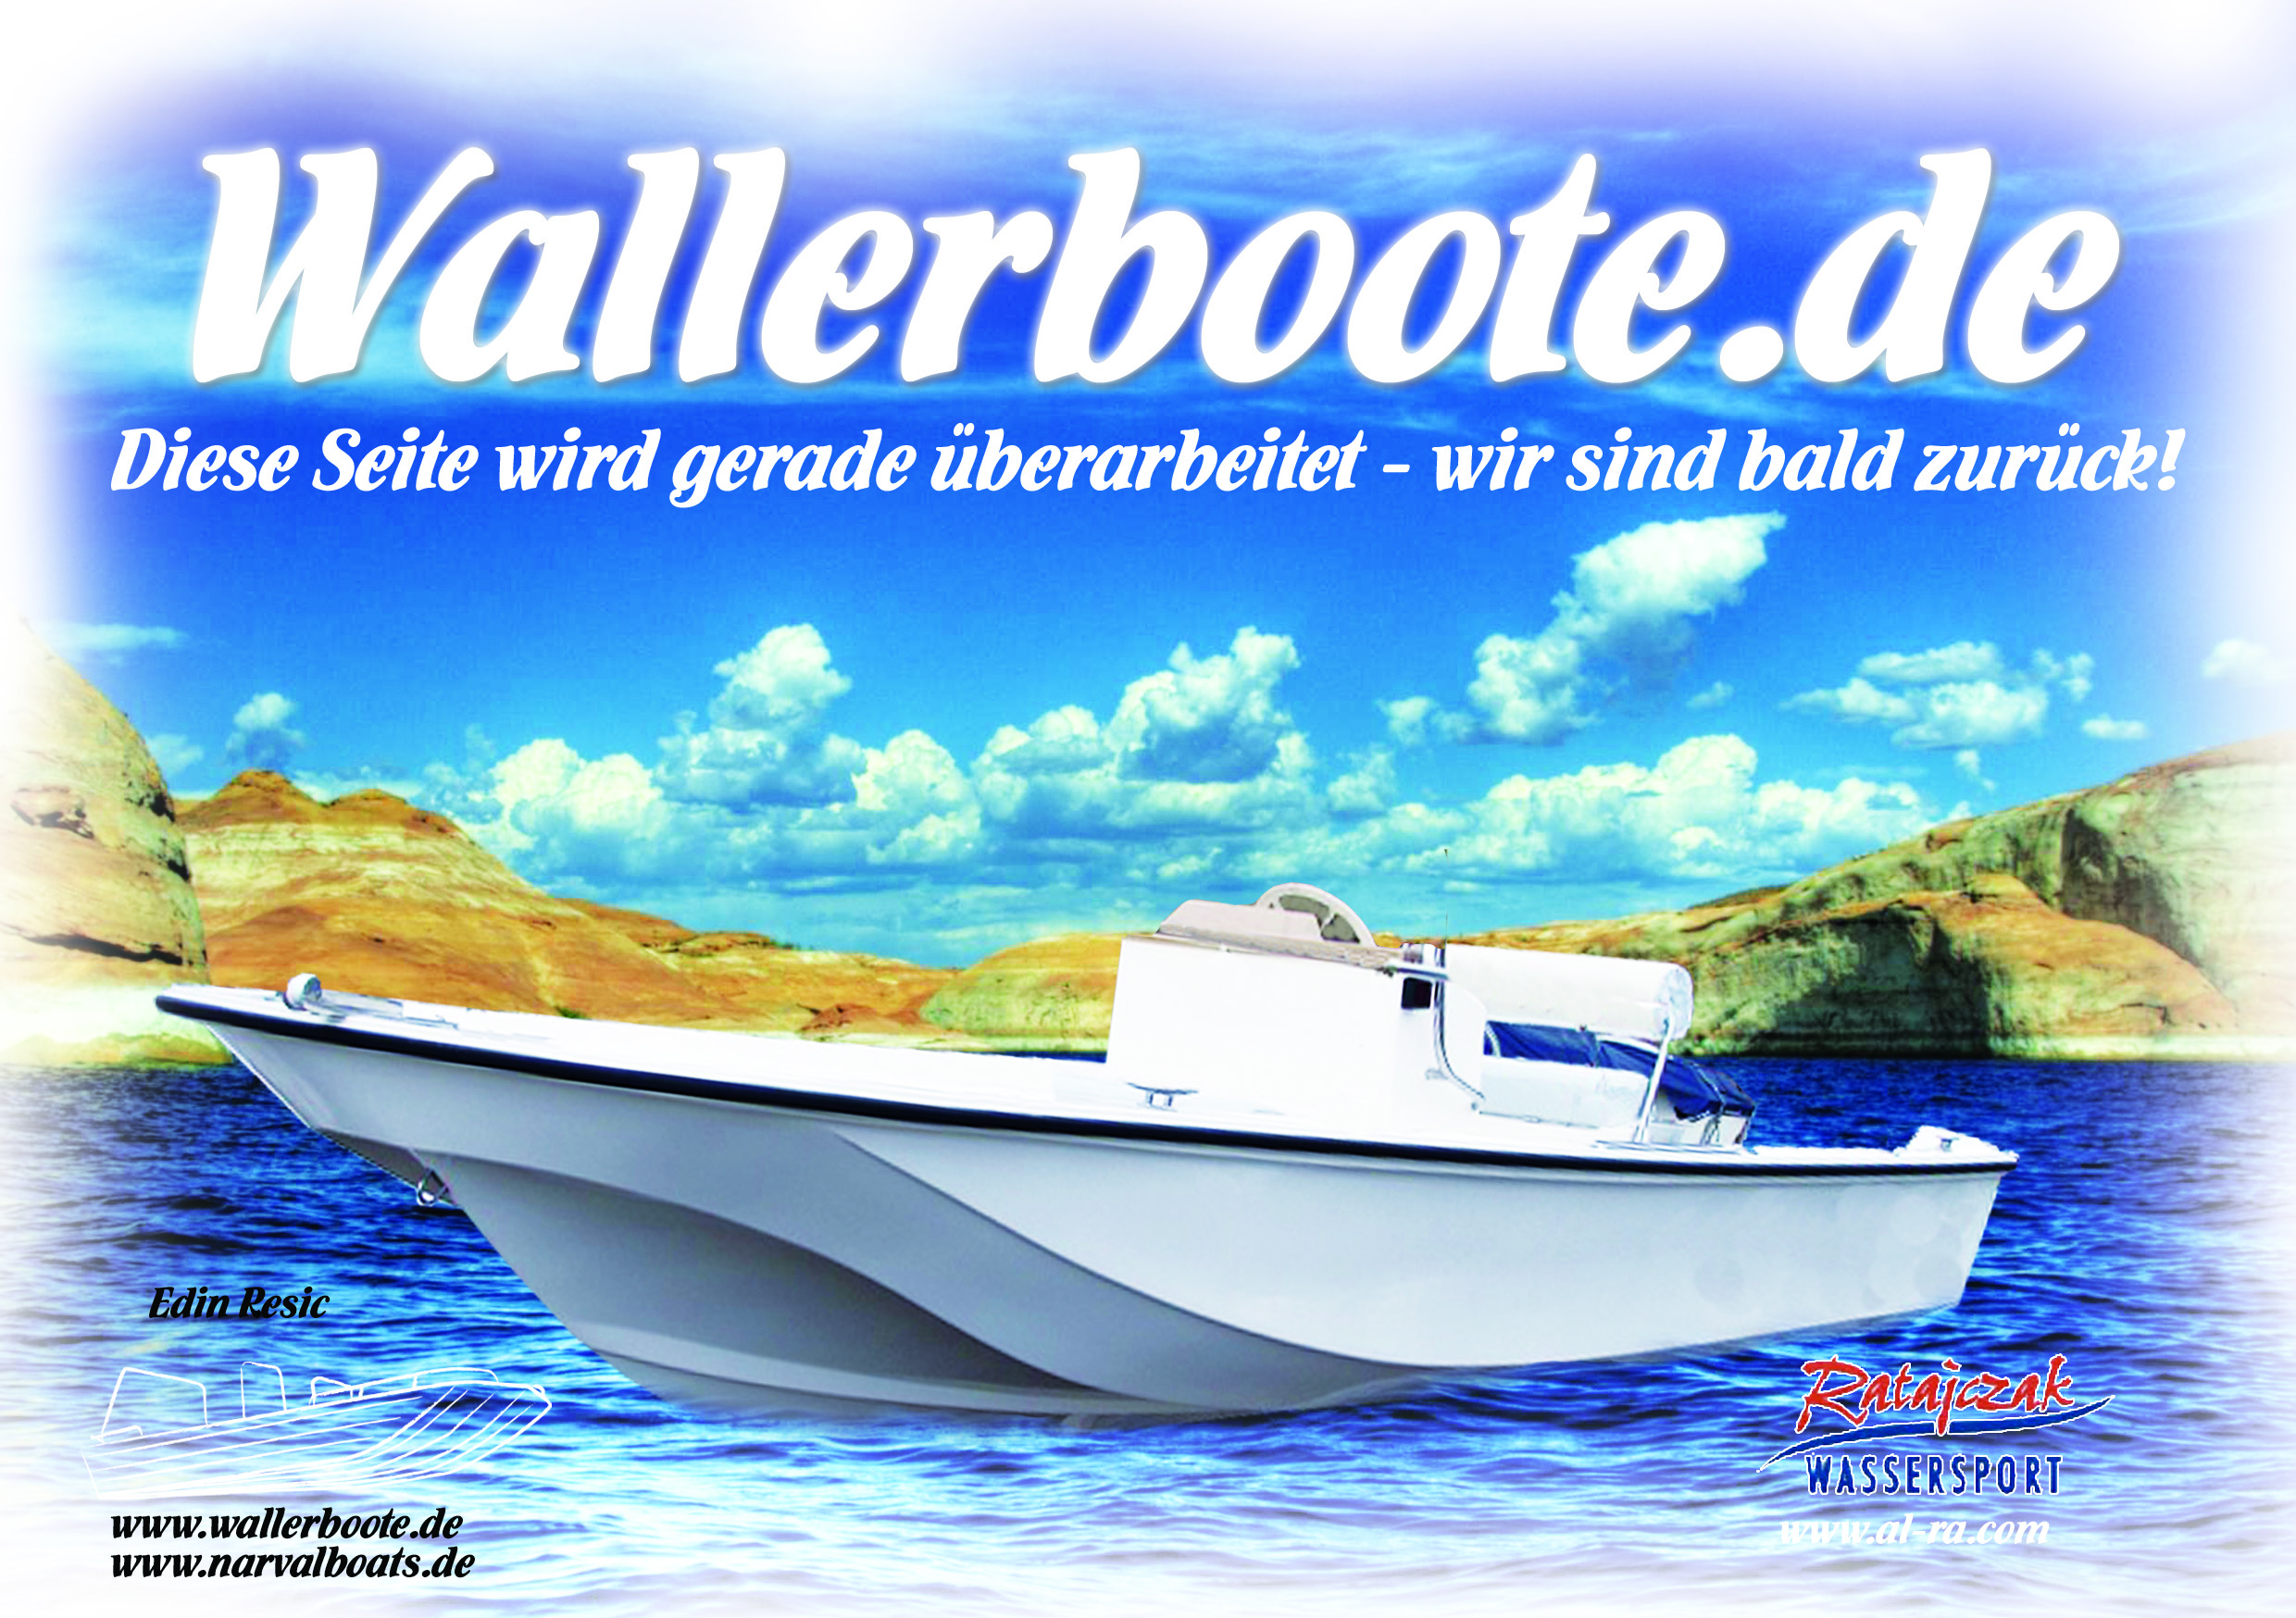 Wallerboote